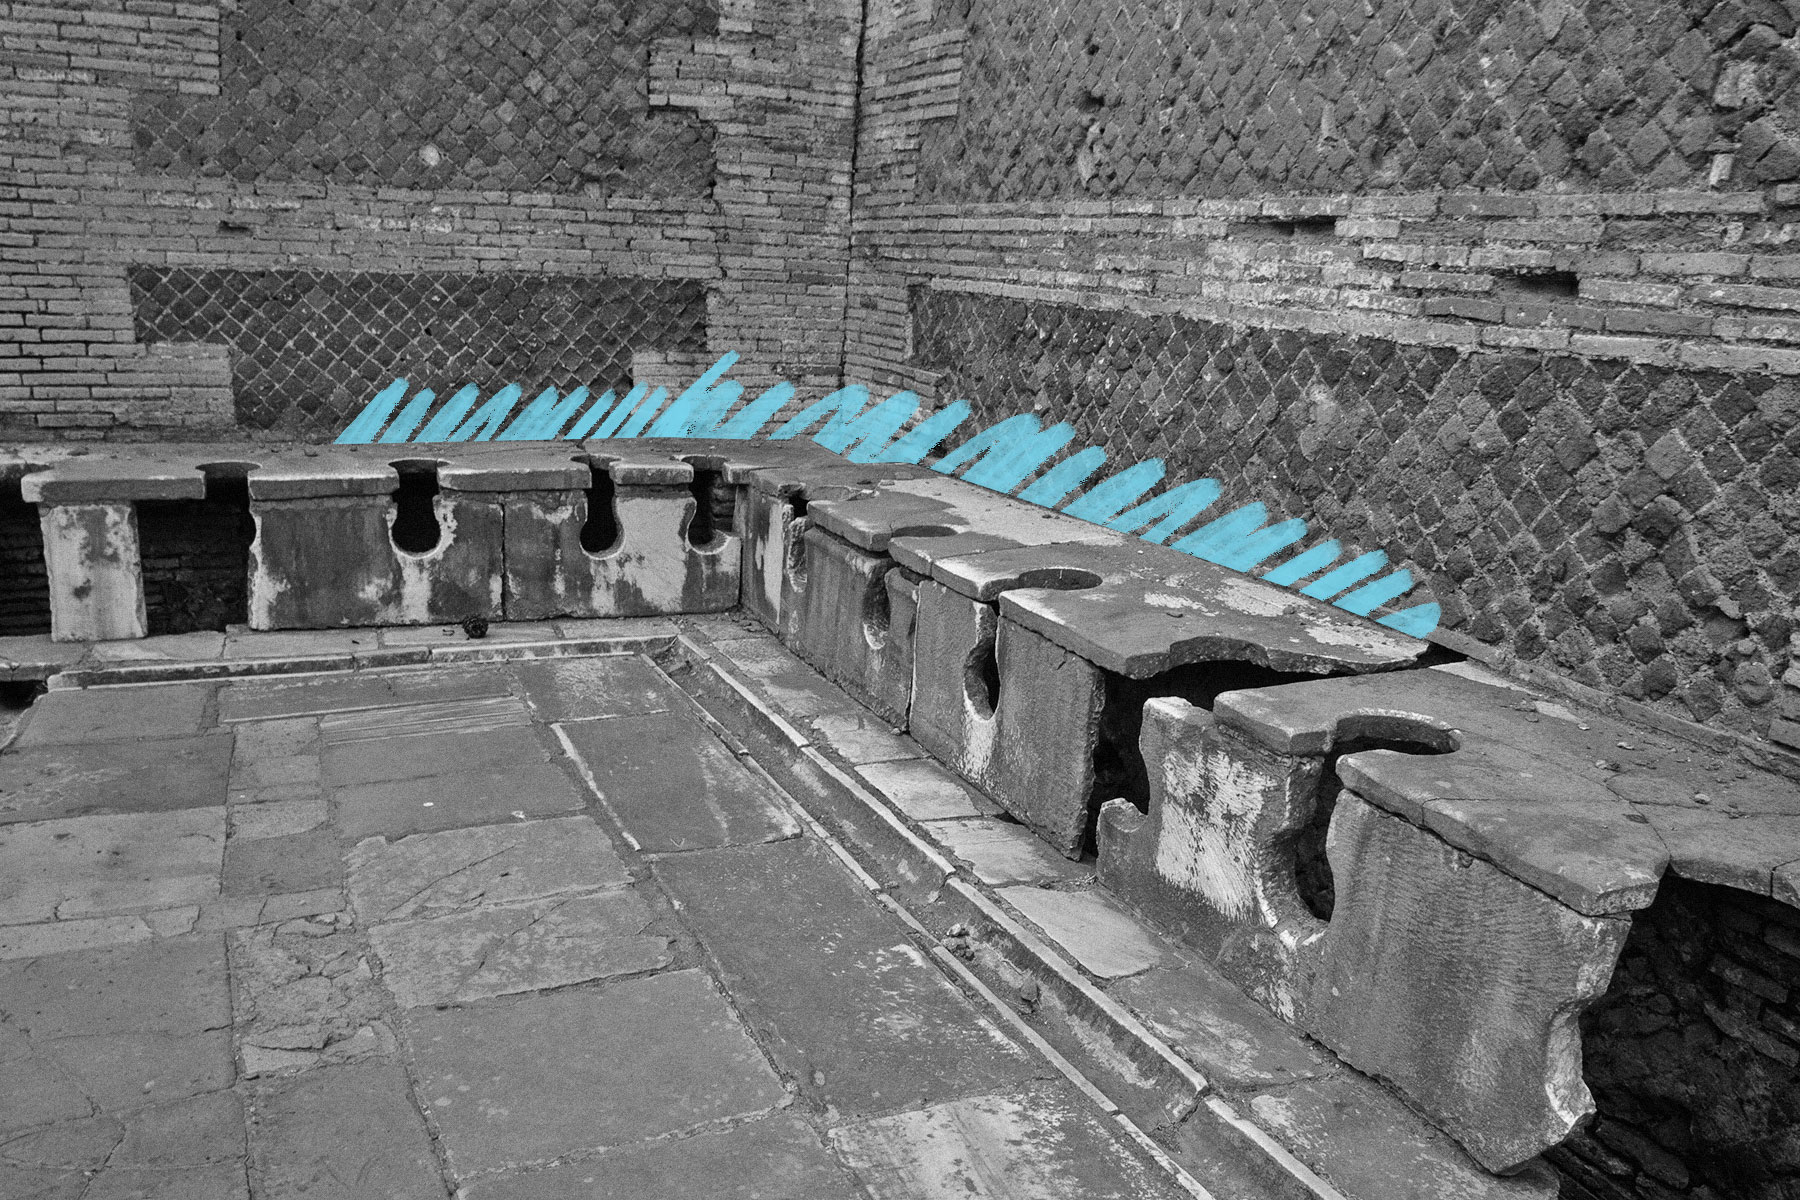 Roman public lavatories